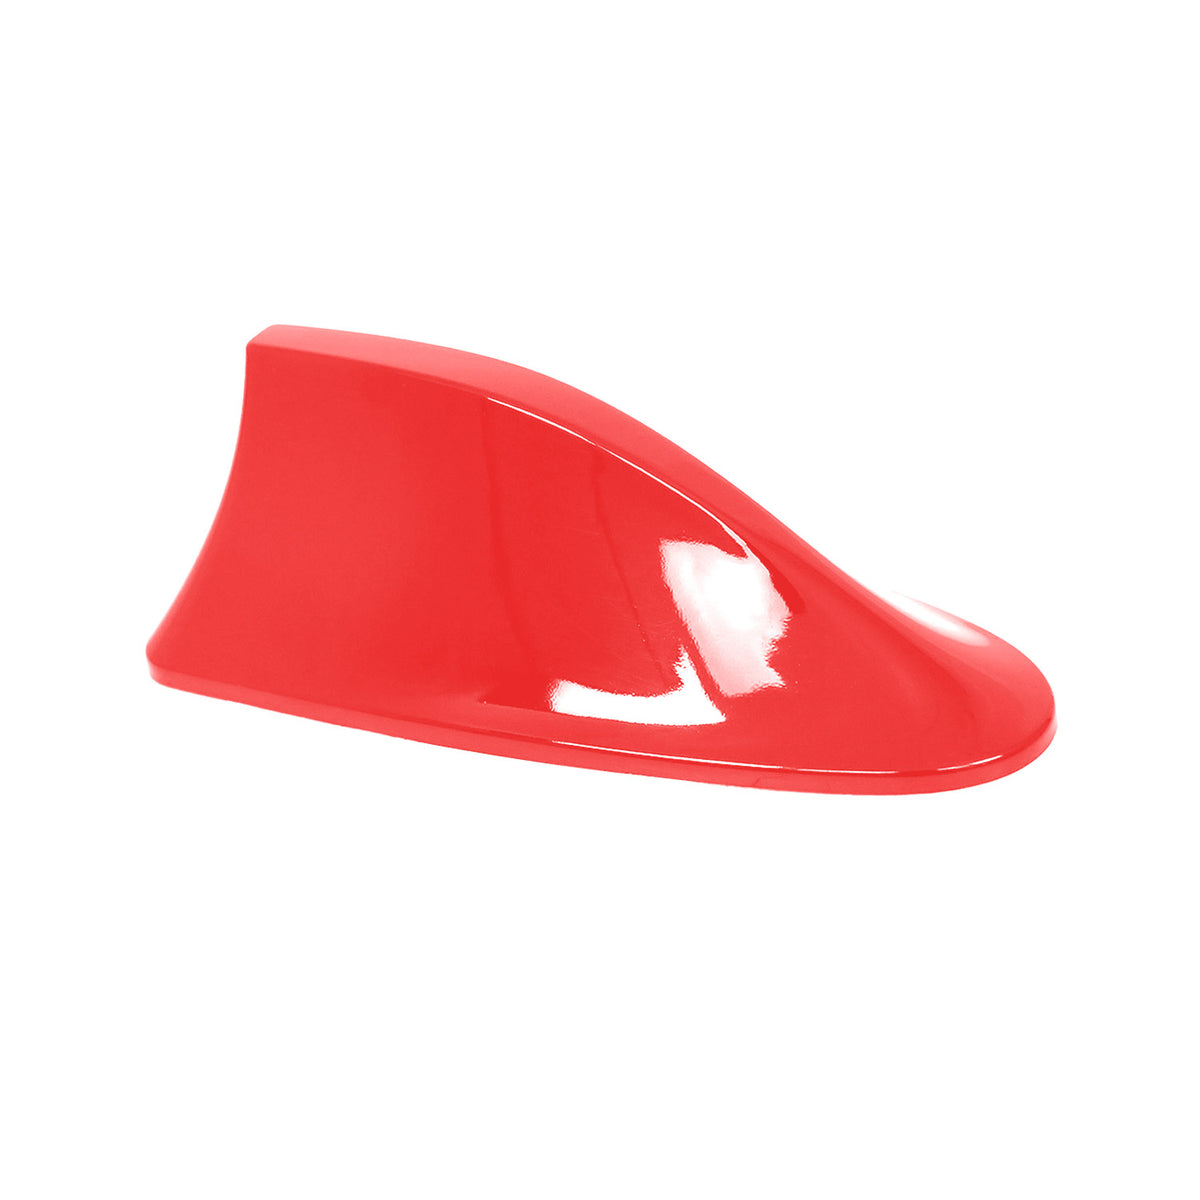 Dachantenne Autoantenne AM/FM Autoradio Shark Antenne für Seat Ibiza Rot